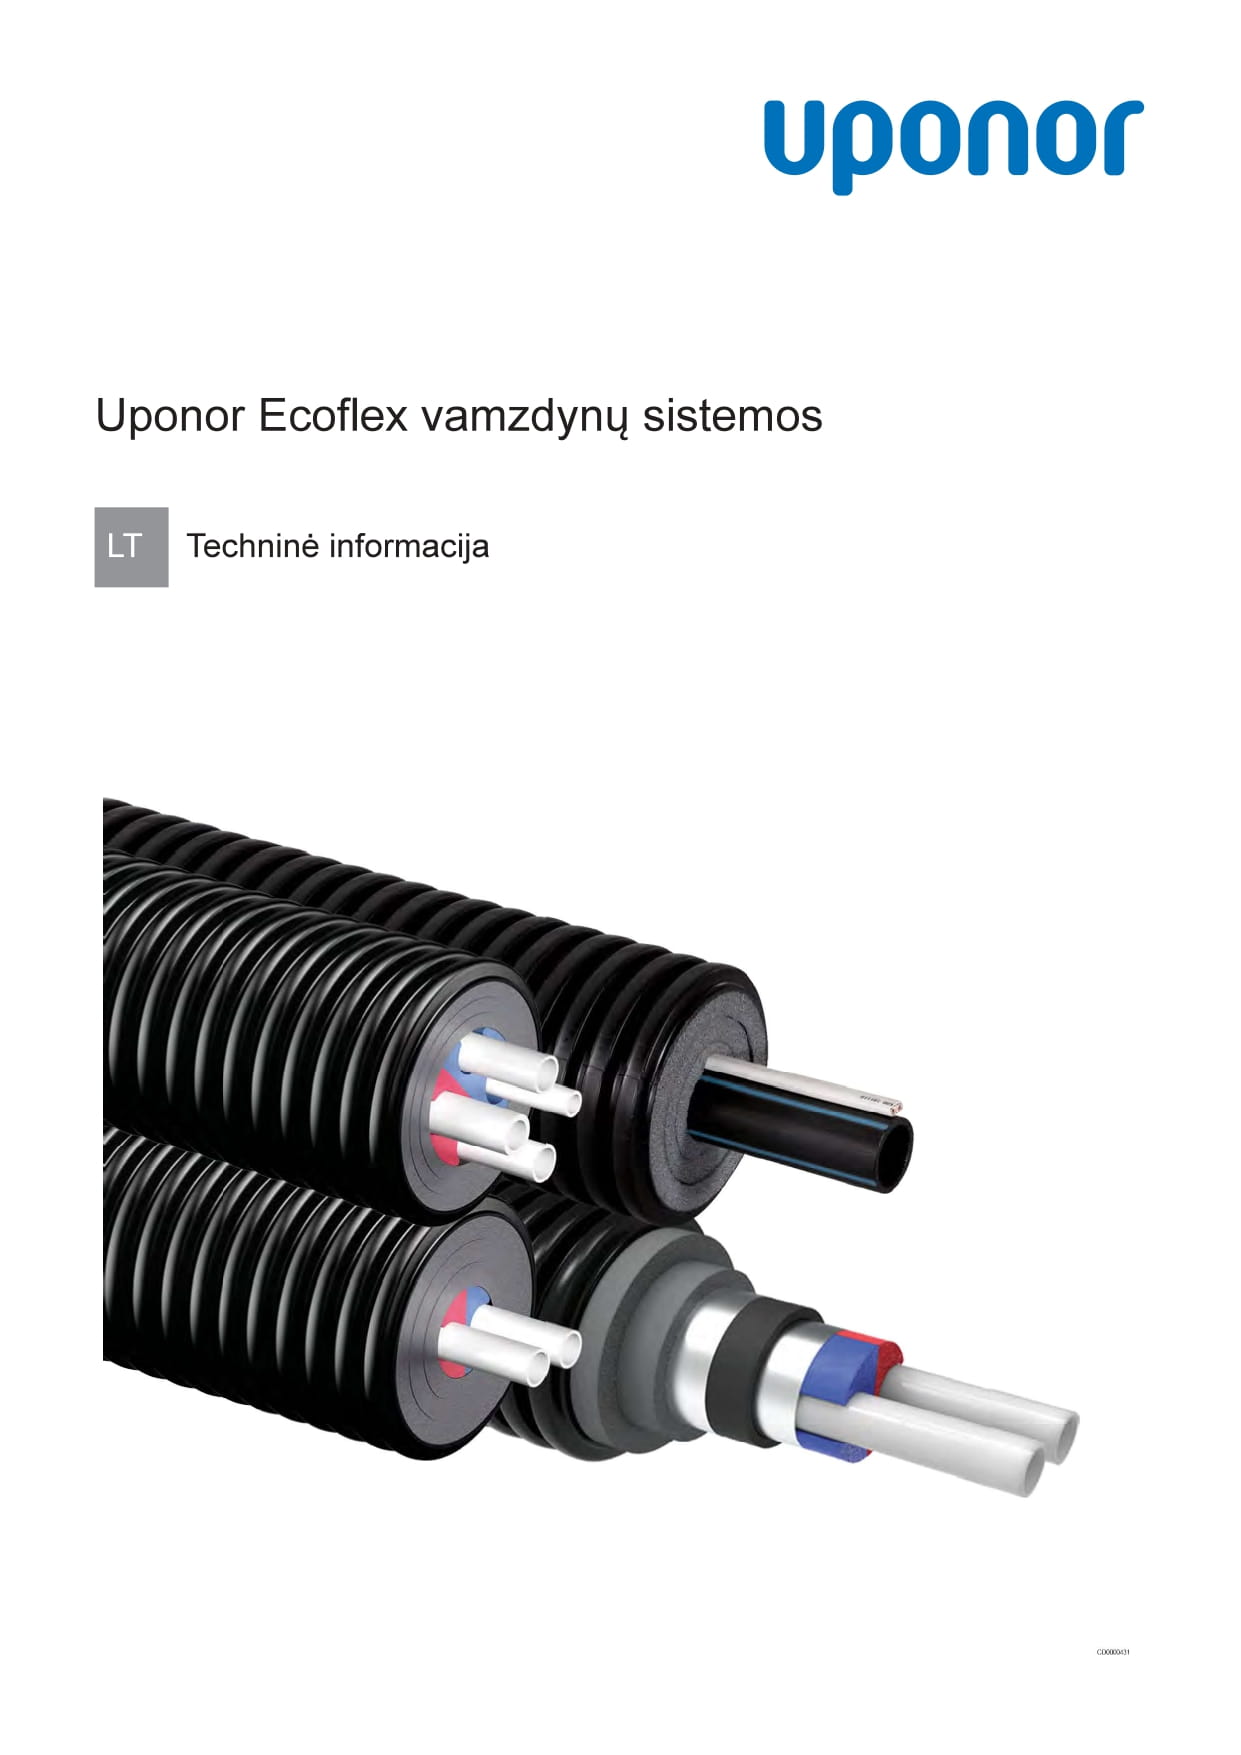 Uponor Ecoflex vamzdynų sistemos